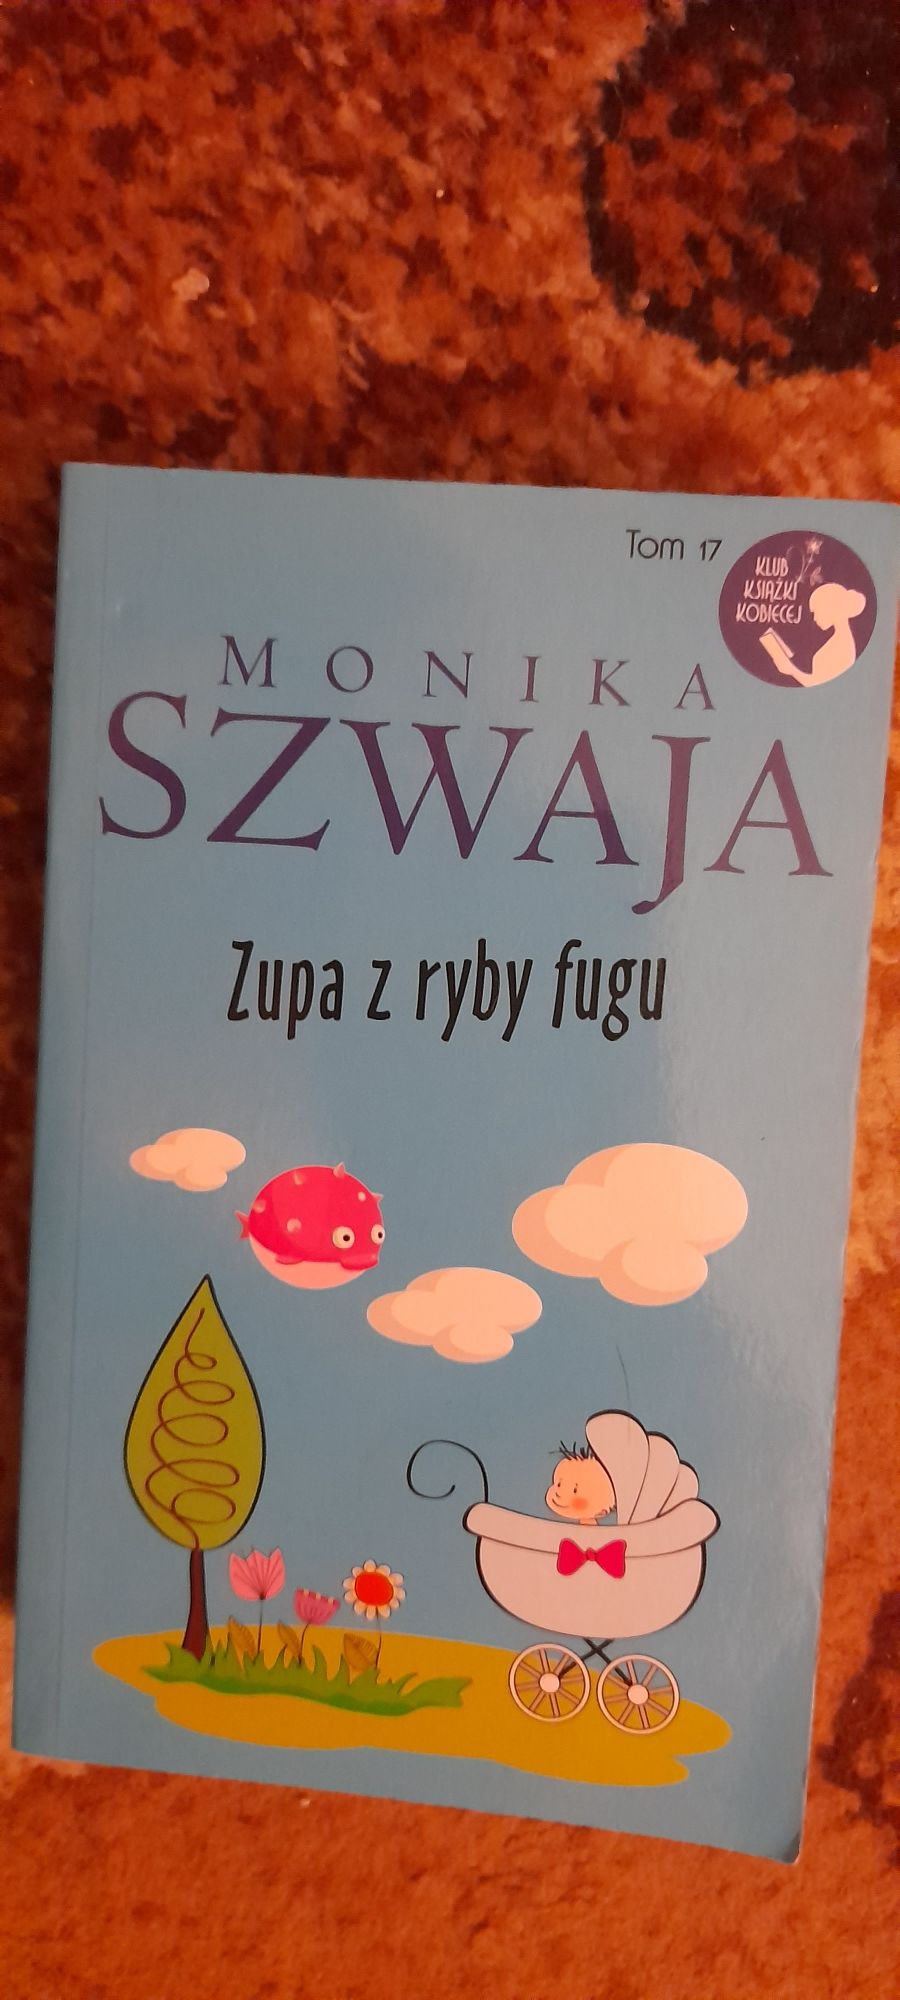 Zupa z ryby fugu - Monika Szwaja 2015r.